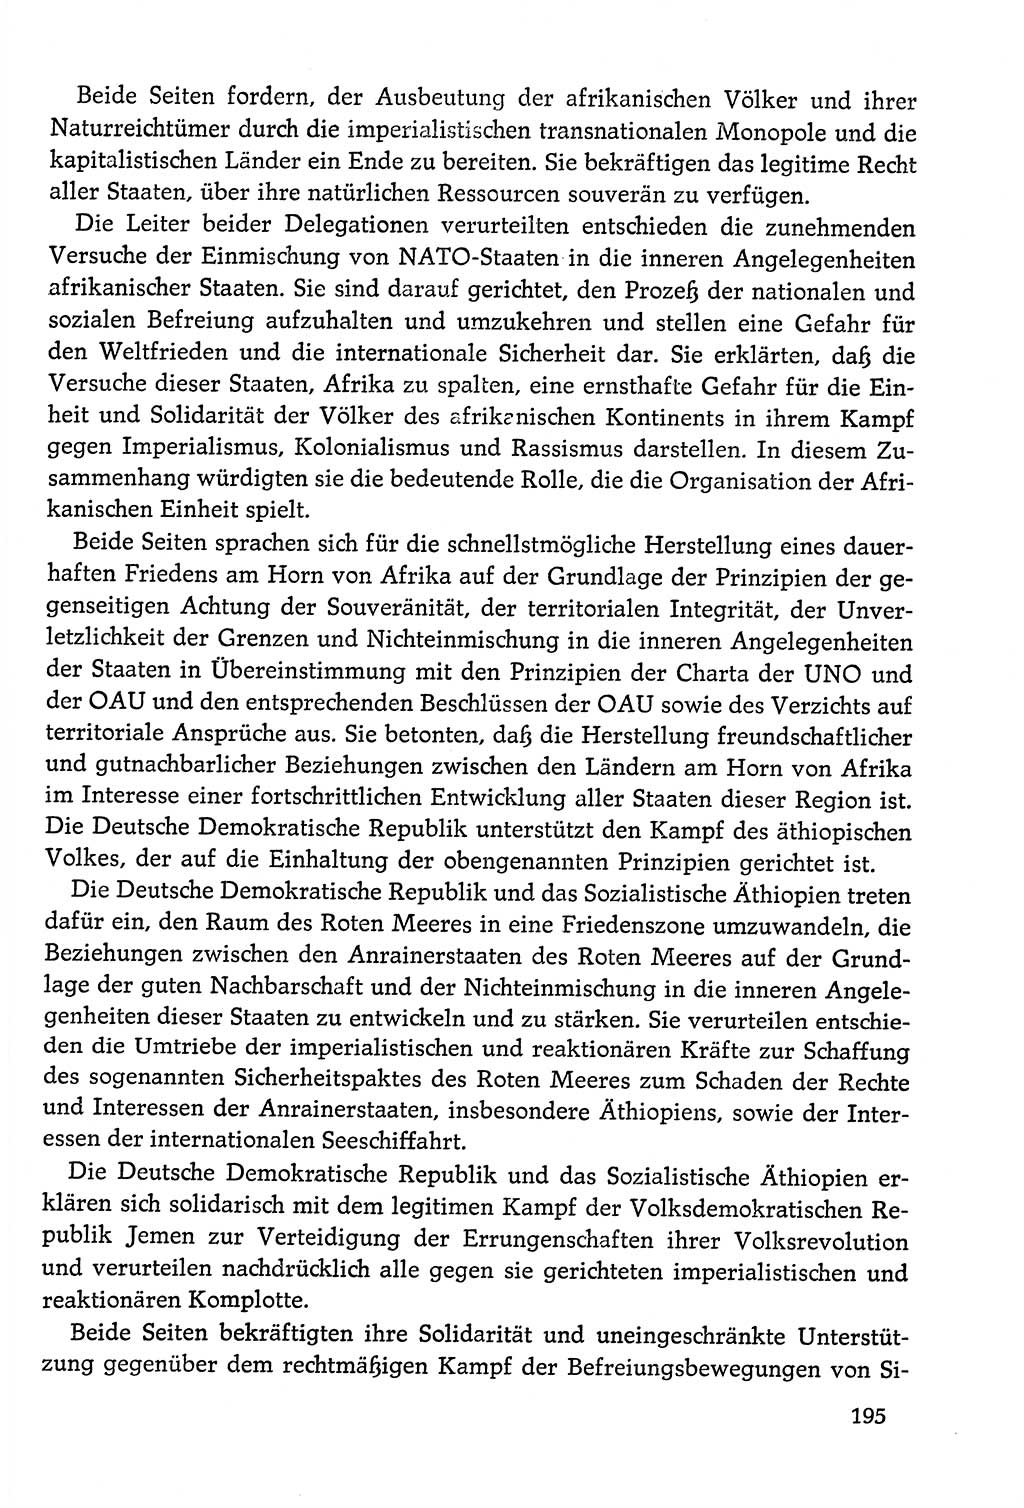 Dokumente der Sozialistischen Einheitspartei Deutschlands (SED) [Deutsche Demokratische Republik (DDR)] 1978-1979, Seite 195 (Dok. SED DDR 1978-1979, S. 195)